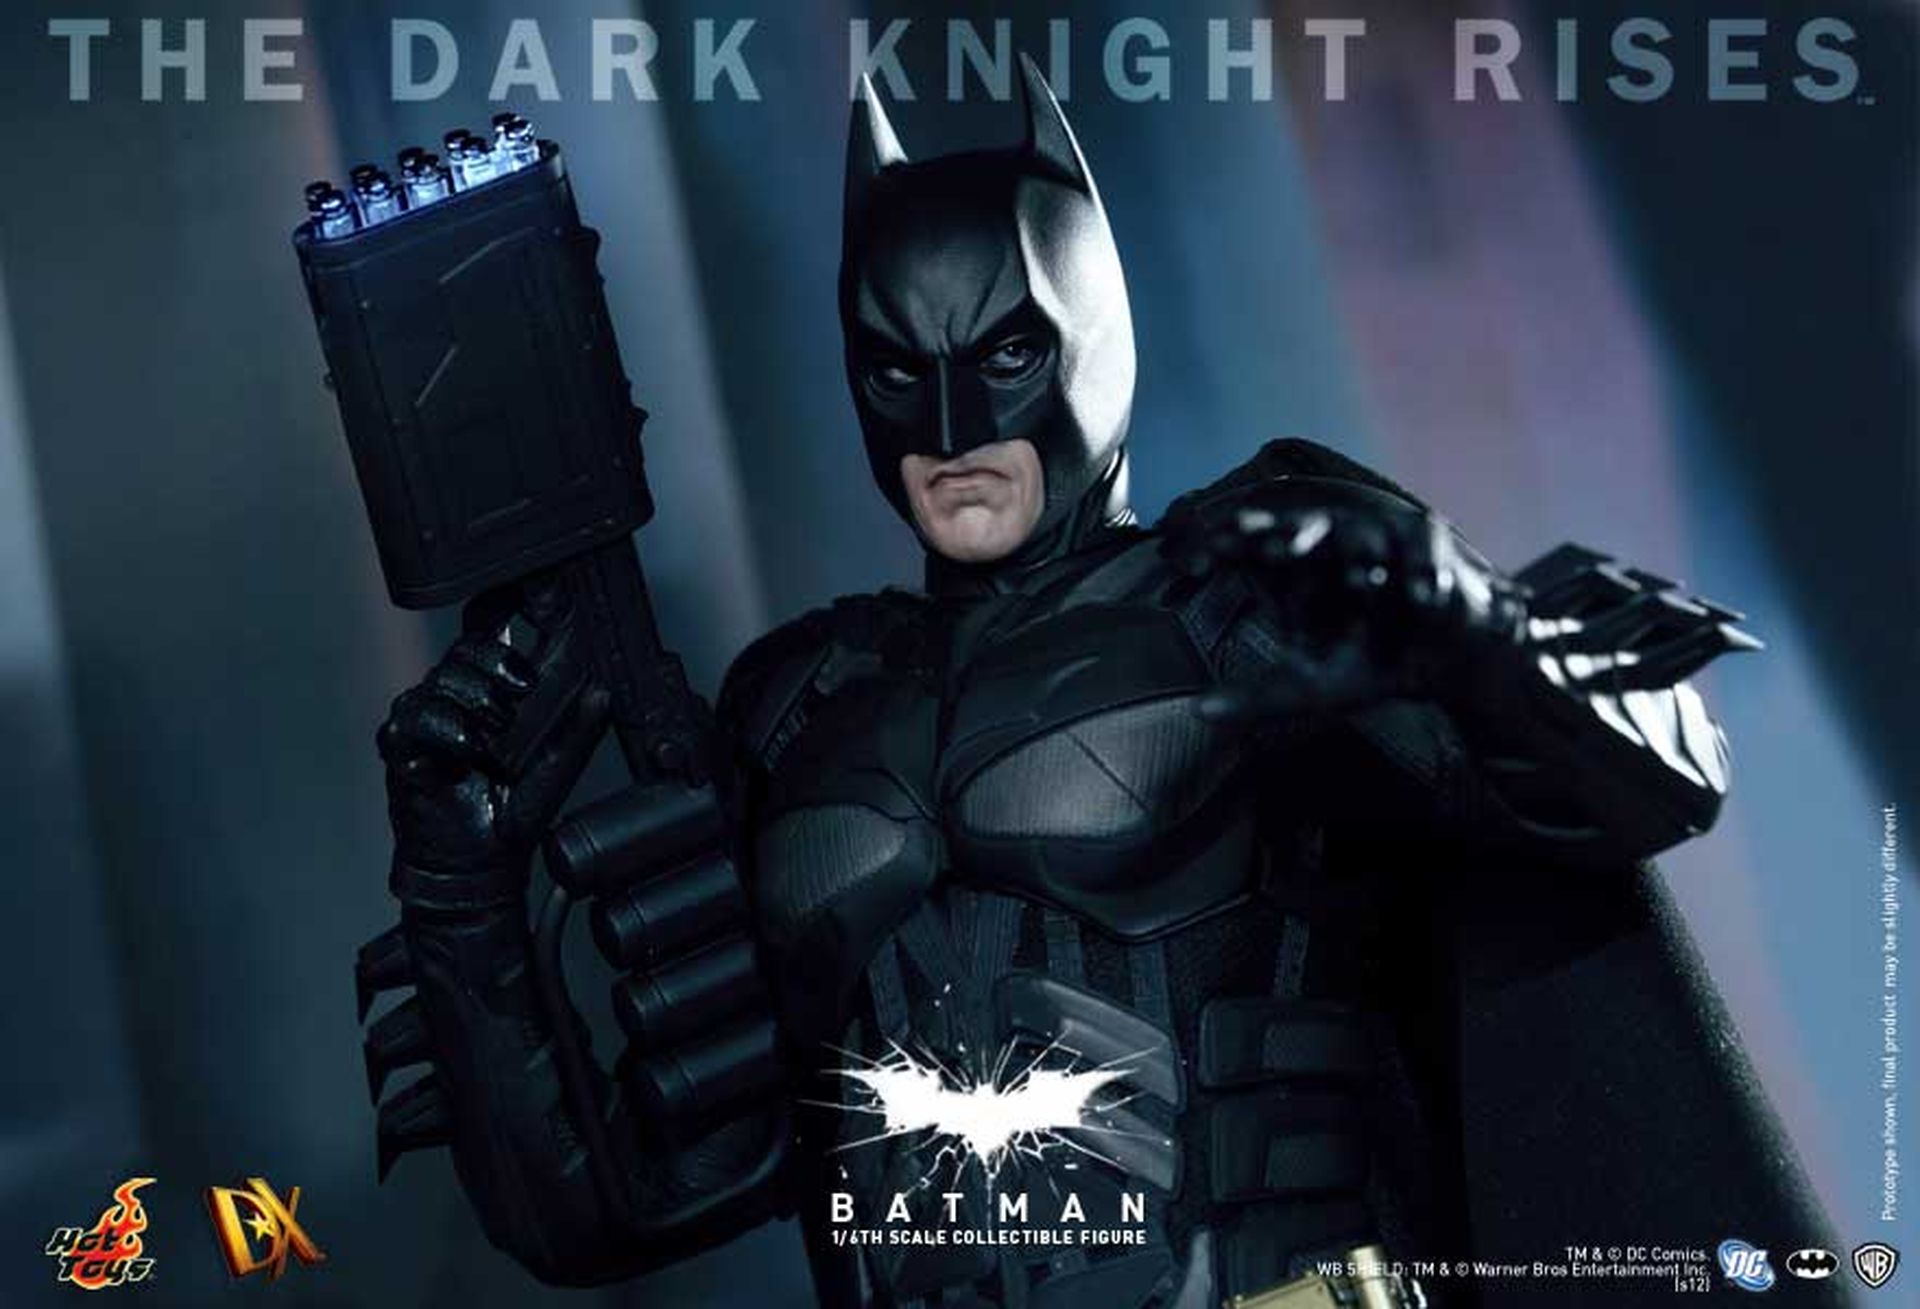 7. Batman (The Dark Knight Rises) - DX12